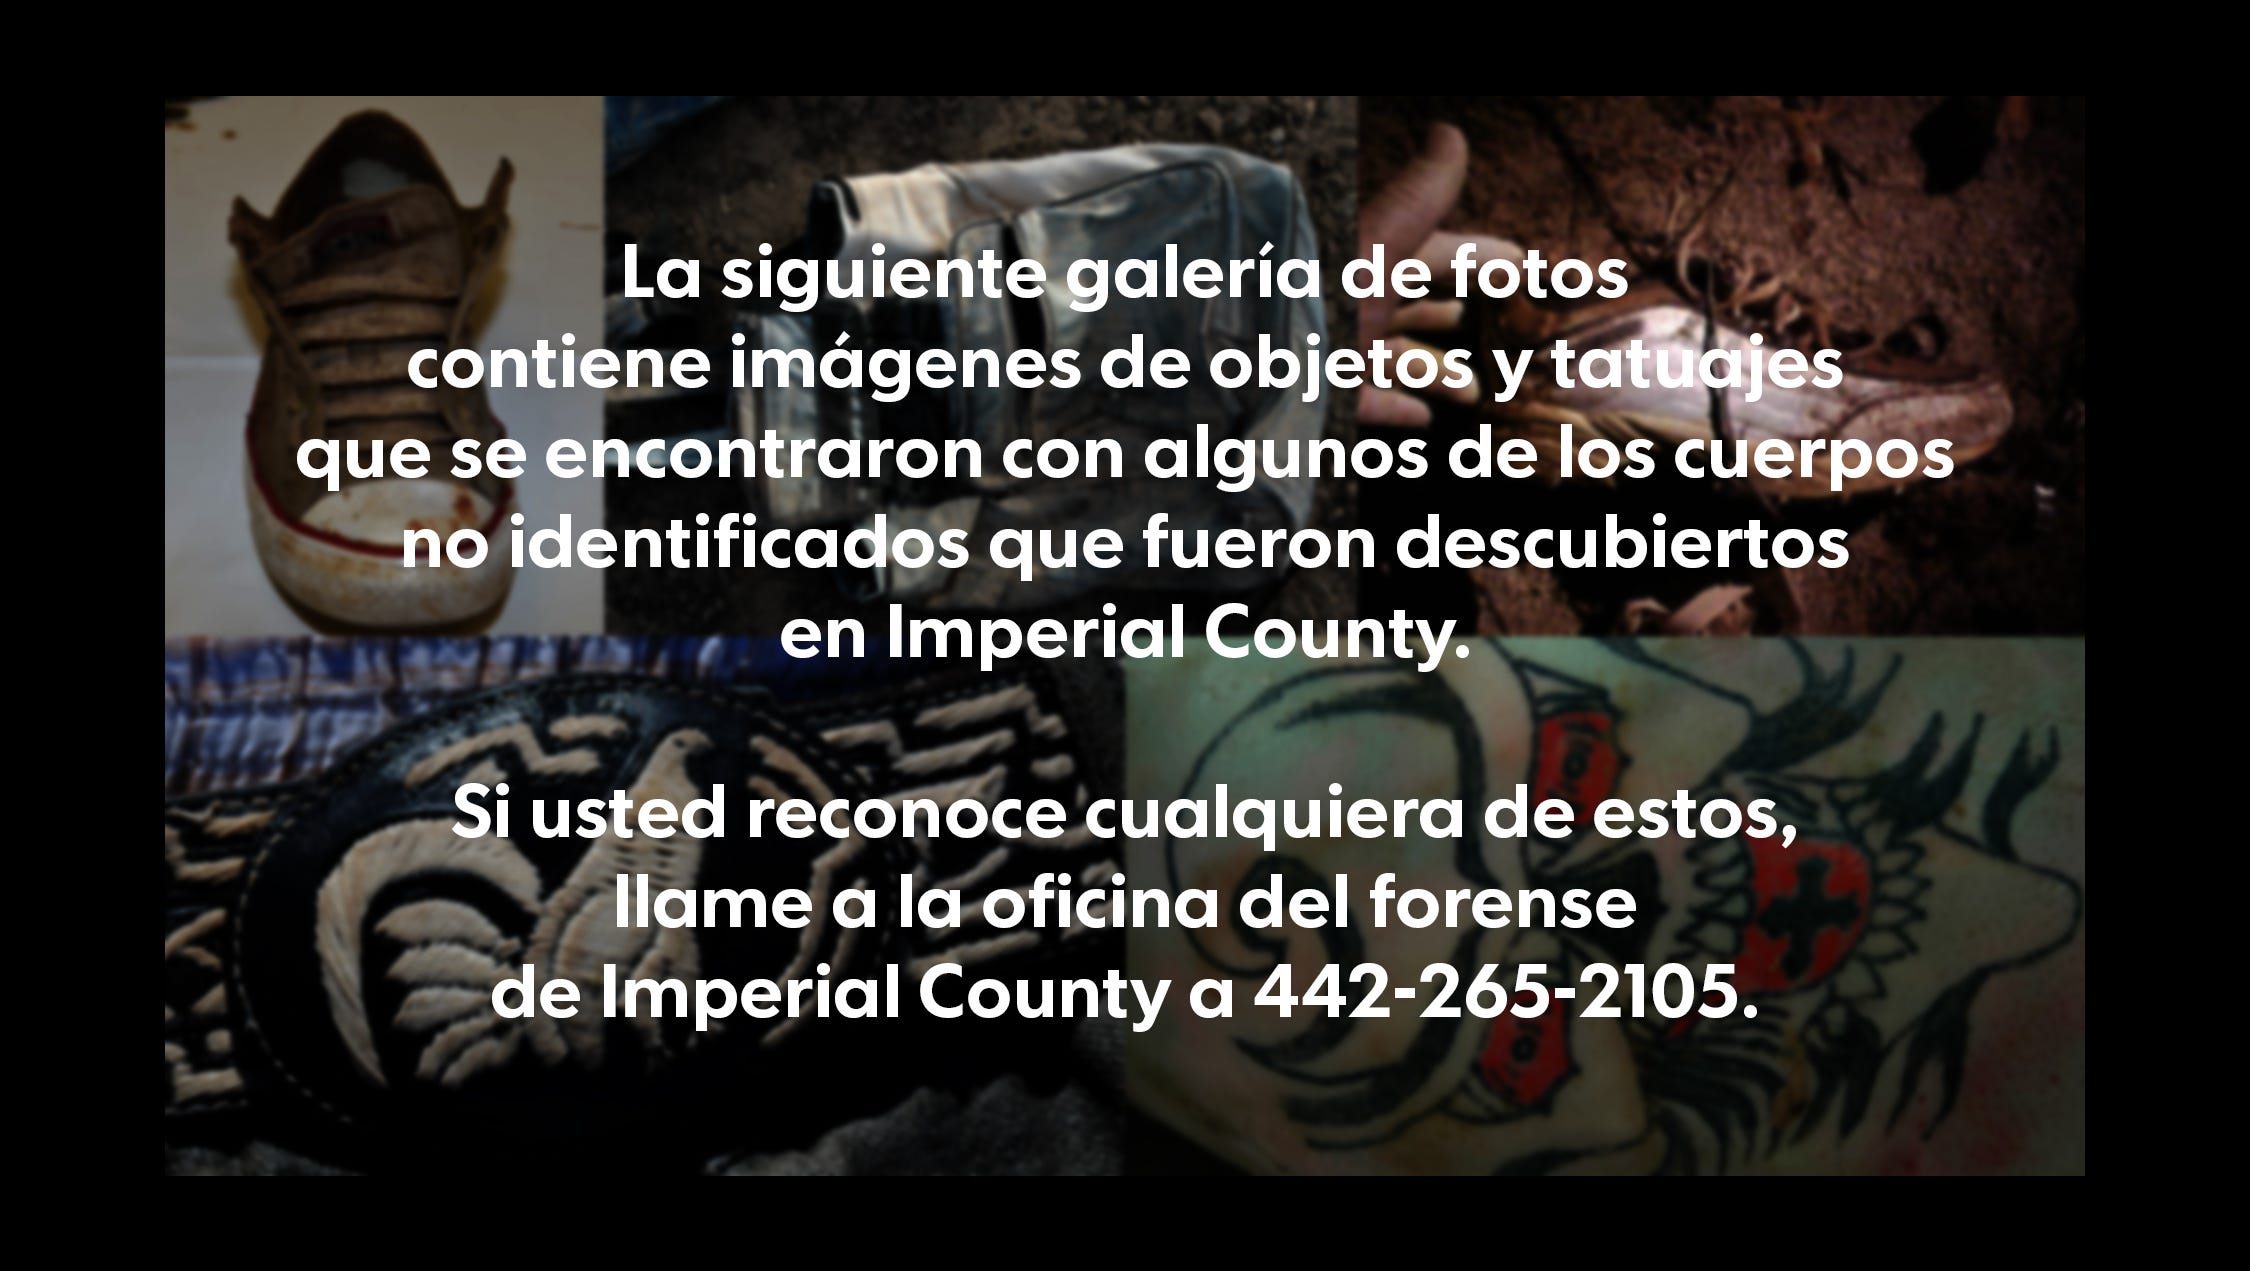 La siguiente galería de fotos contiene imágenes de objetos y tatuajes que se encontraron con algunos de los cuerpos no identificados que fueron descubiertos en Imperial County. 
Si usted reconoce cualquiera de estos, llame a la oficina del forense de Imperial County a 442-265-2105.